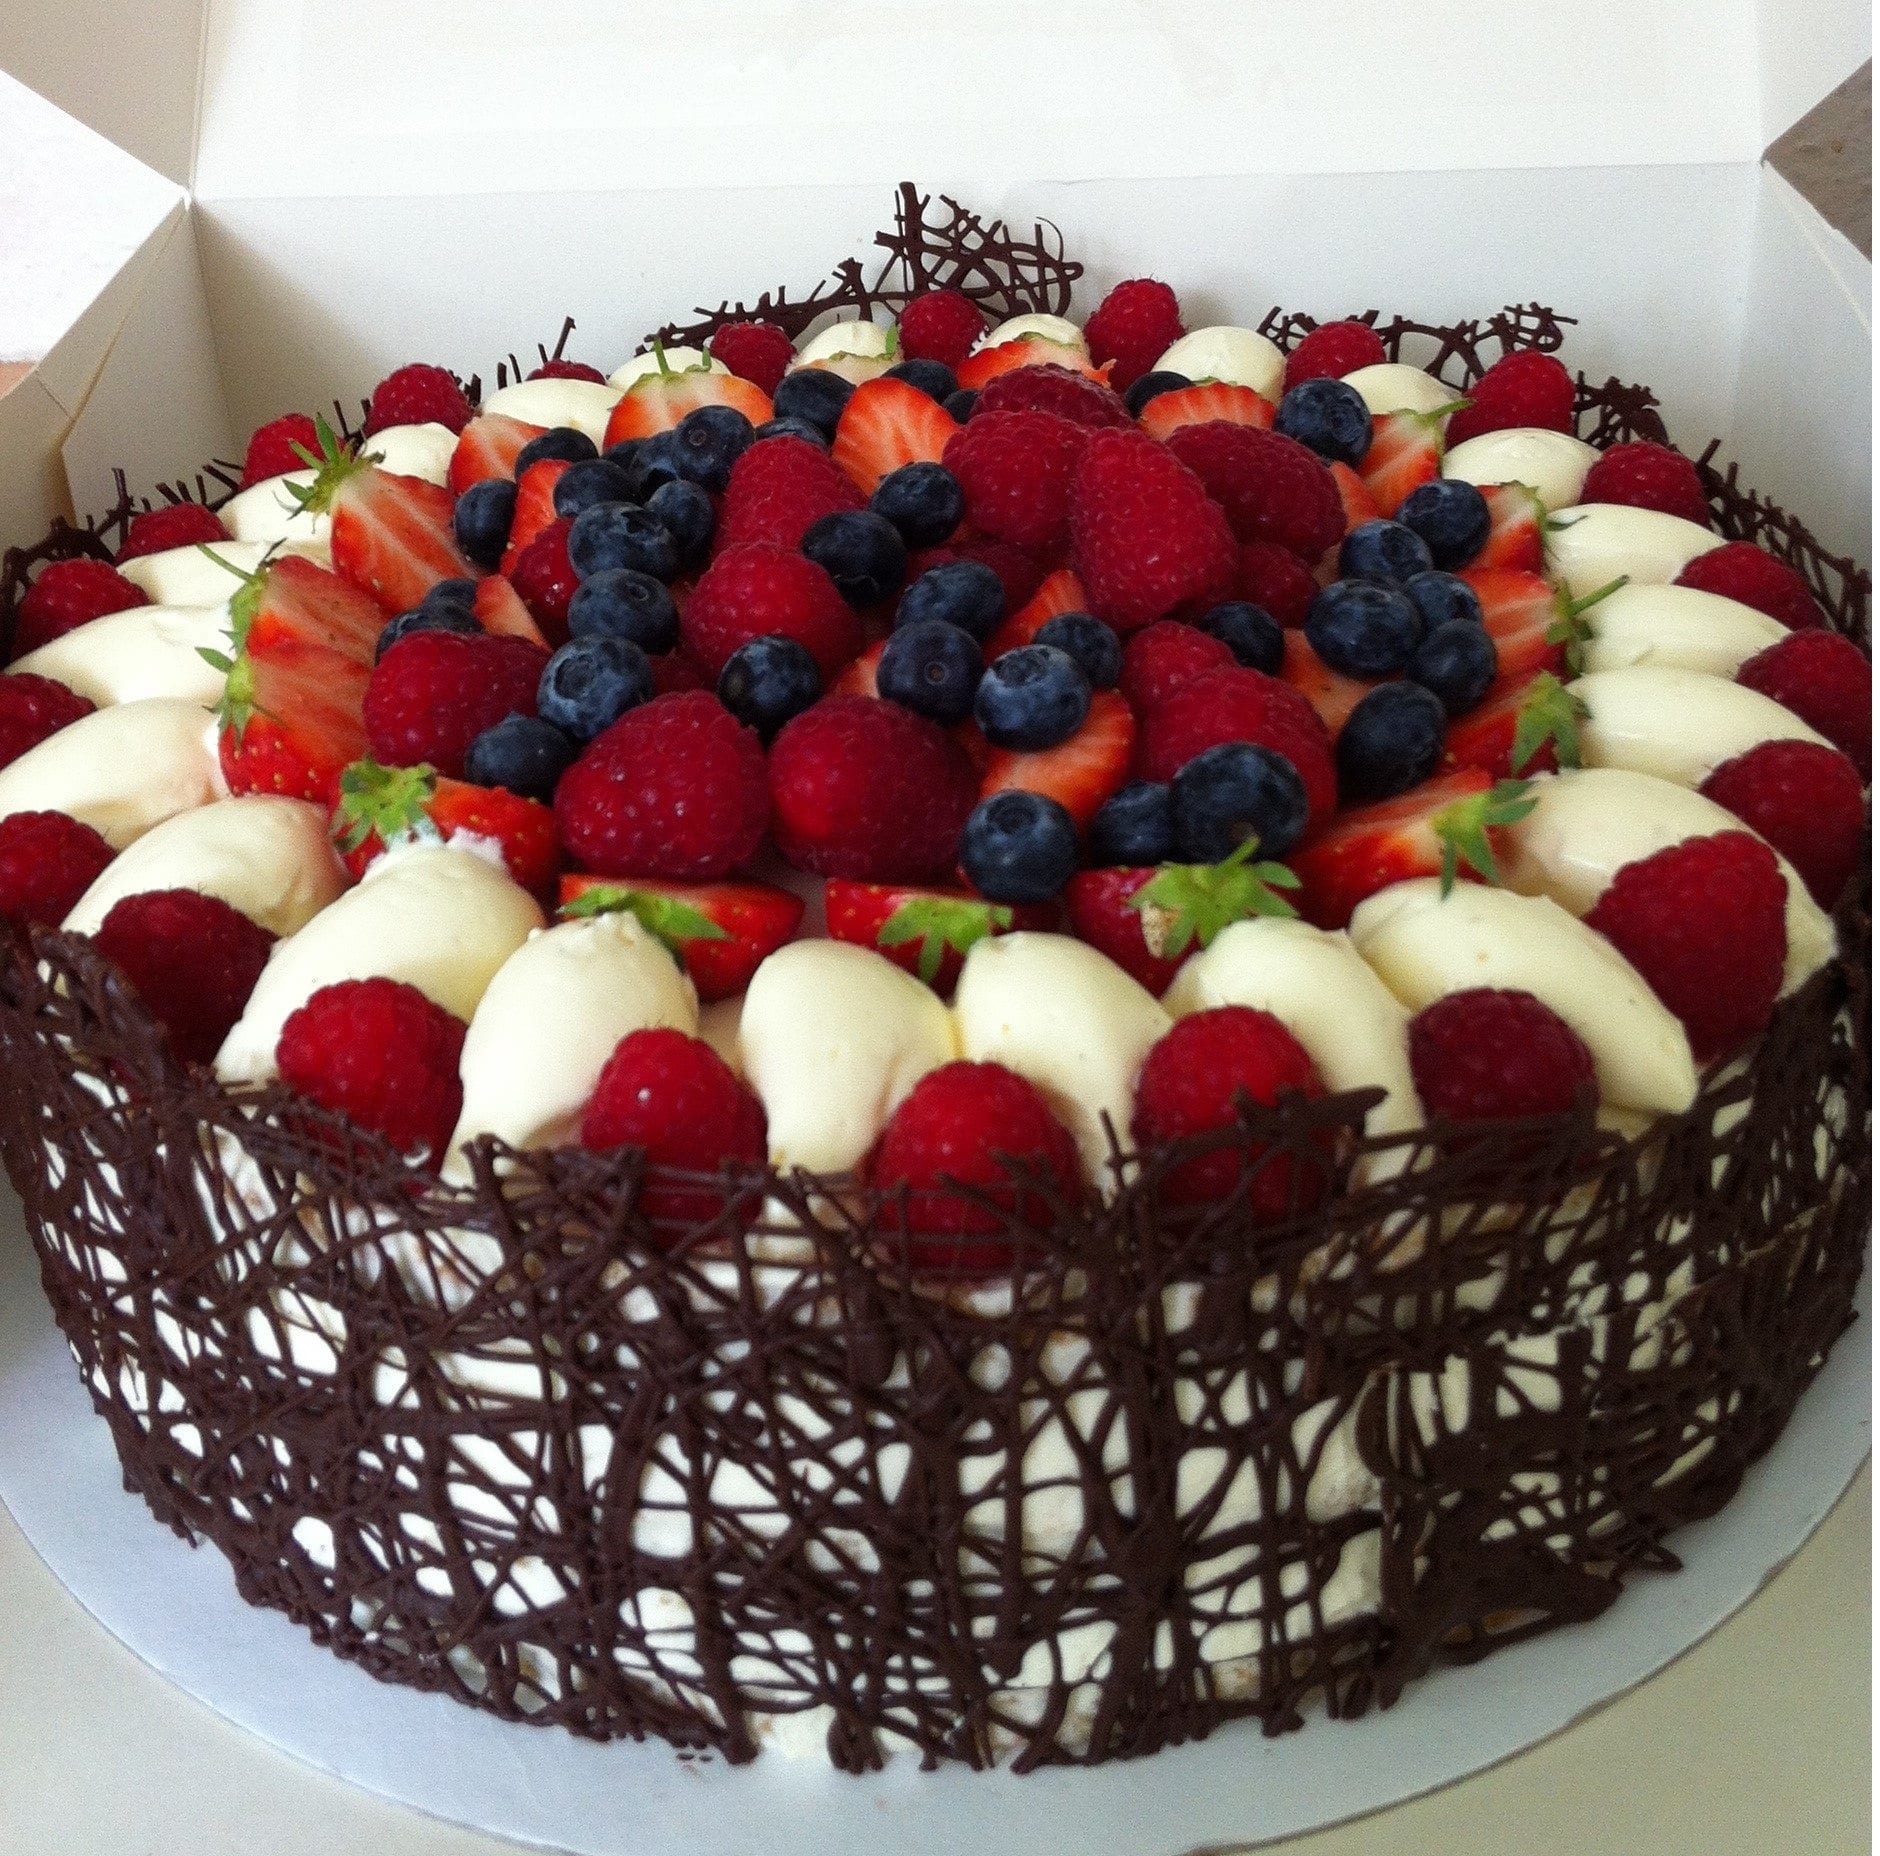 Над воротами занялась красивее торты. Красивые торты. Красивый торт с клубникой. Украшение торта фруктами. Красивые тортики на день рождения.